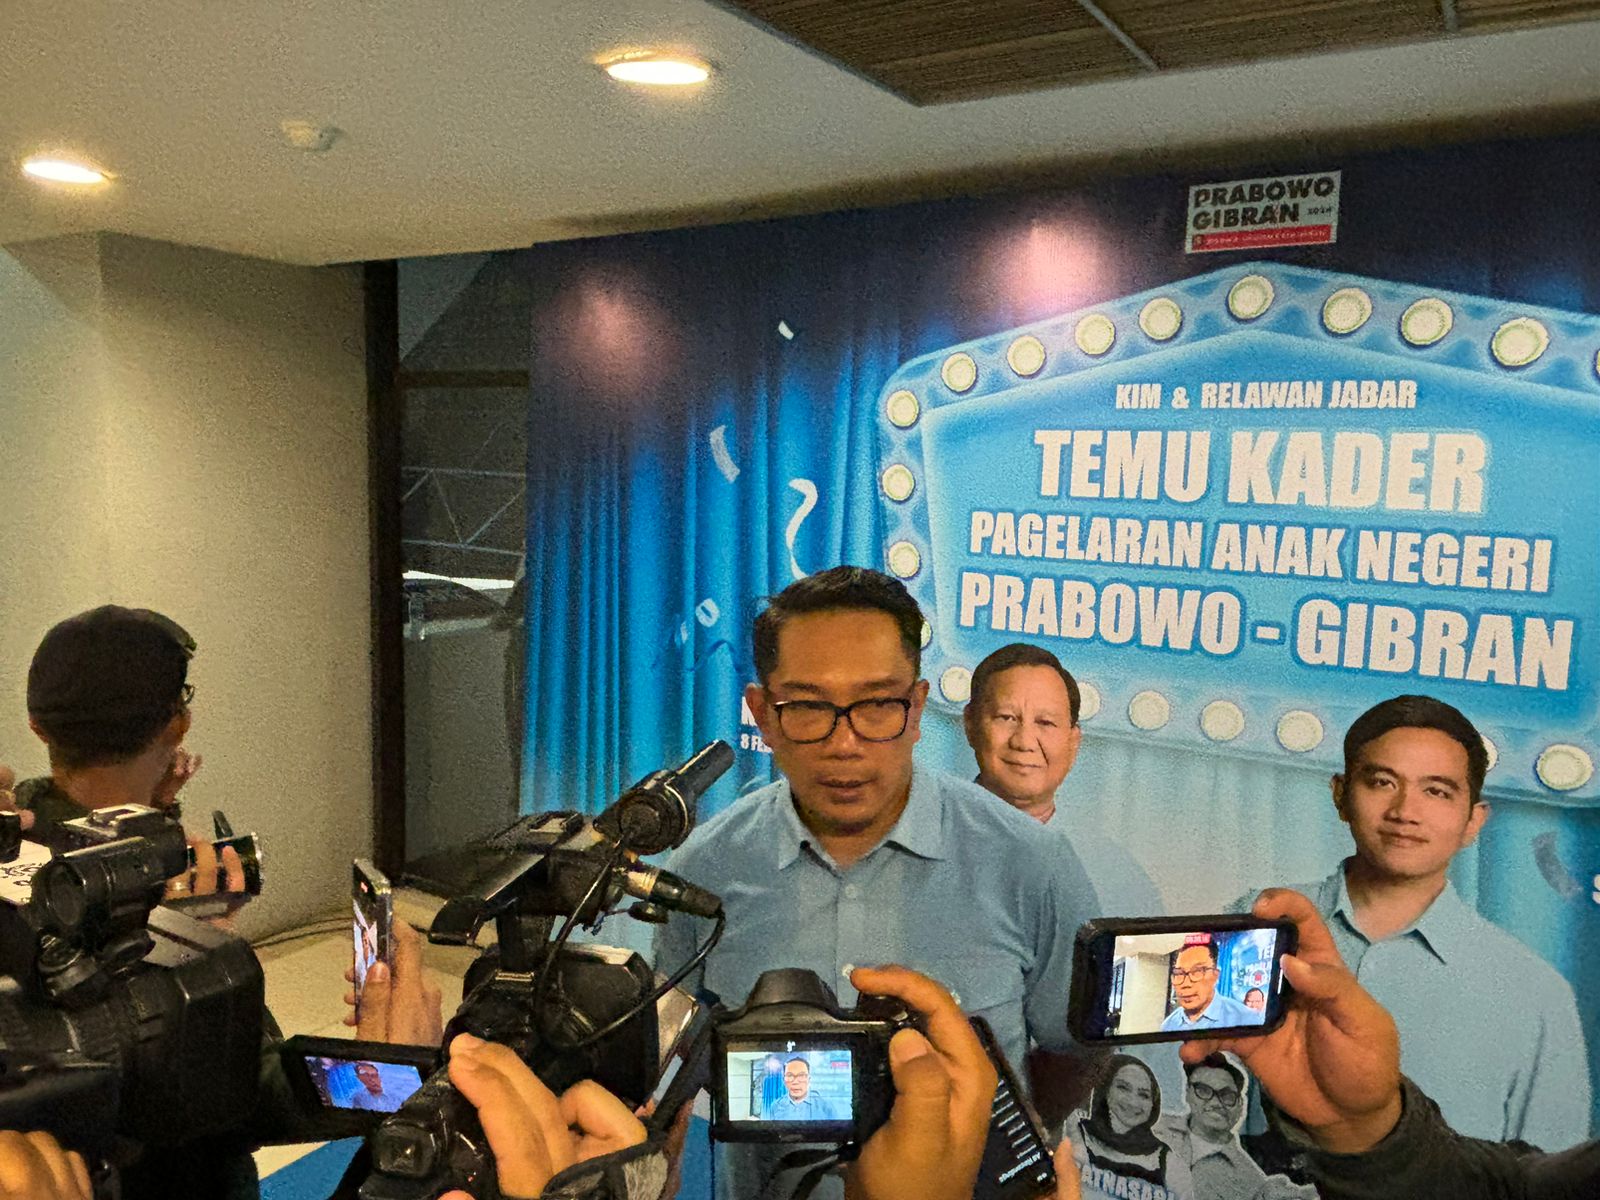 Temu Kader Prabowo di Bandung Membludak, Ridwan Kamil: Tanda Kecintaan pada 02